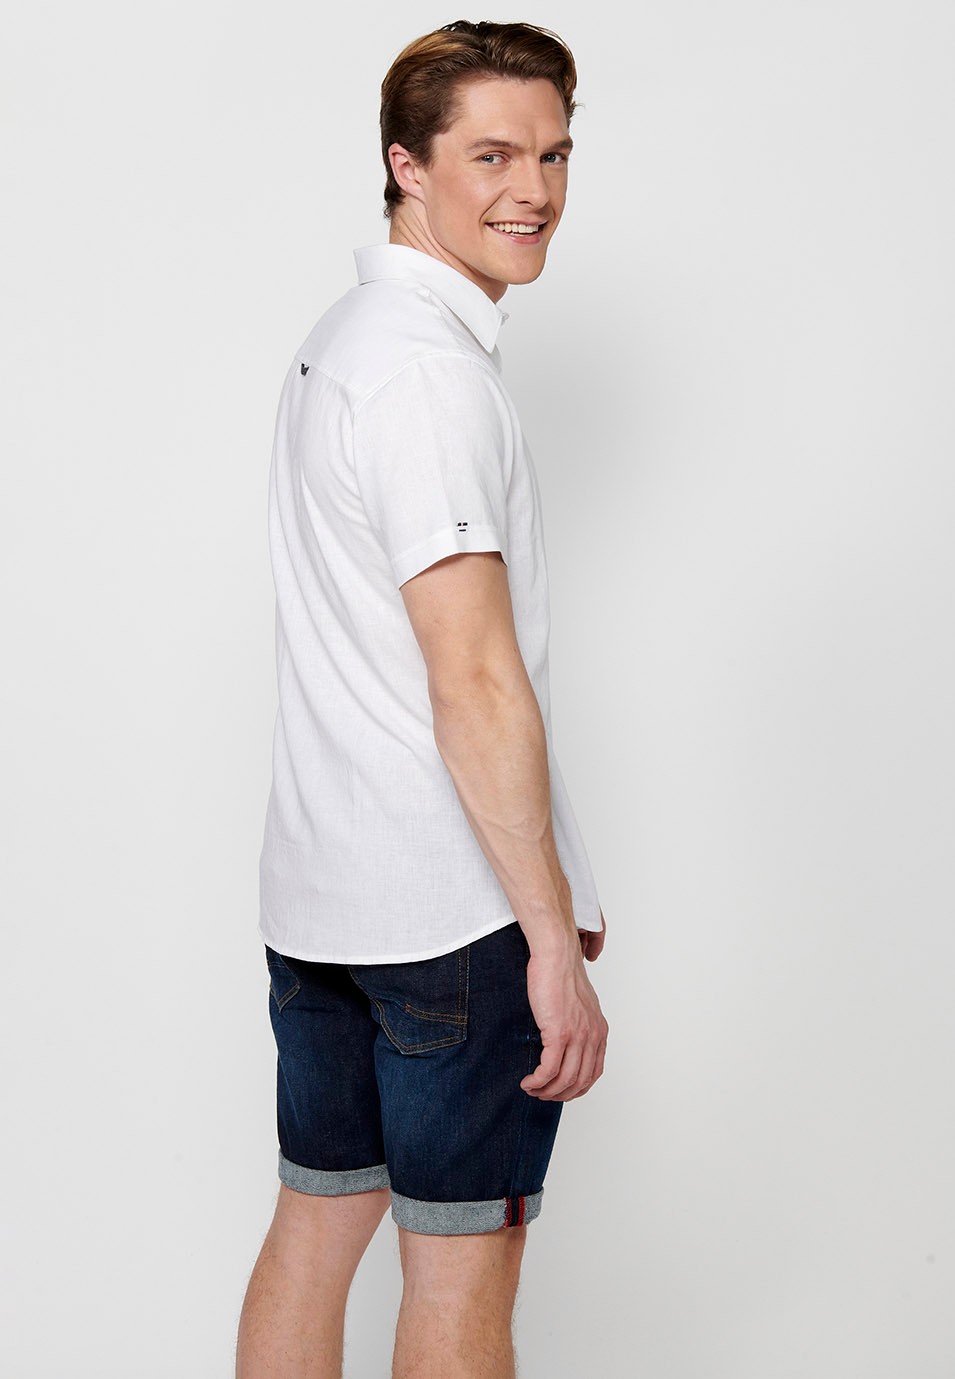 Camisa Manga Corta de Lino, color blanco, para hombre